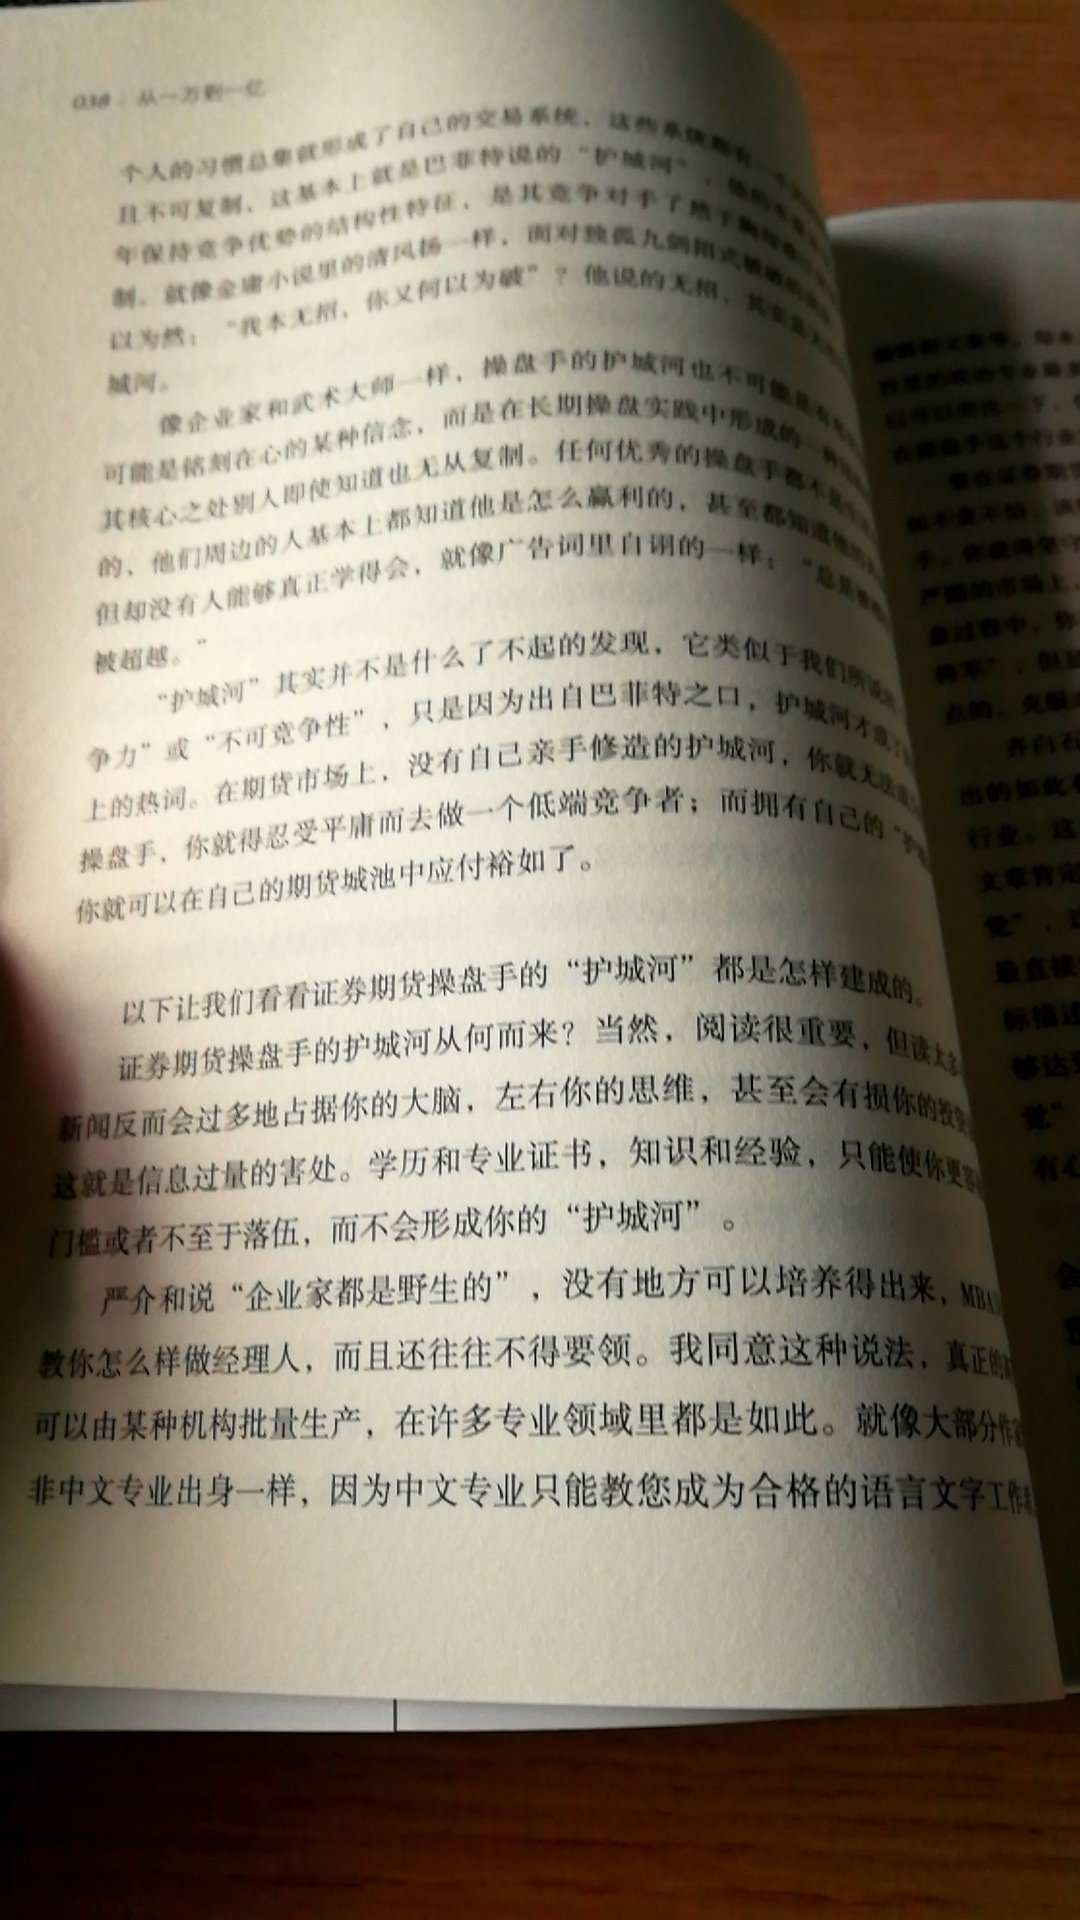 中国人写的书要看一下，翻了一下觉得还不错。